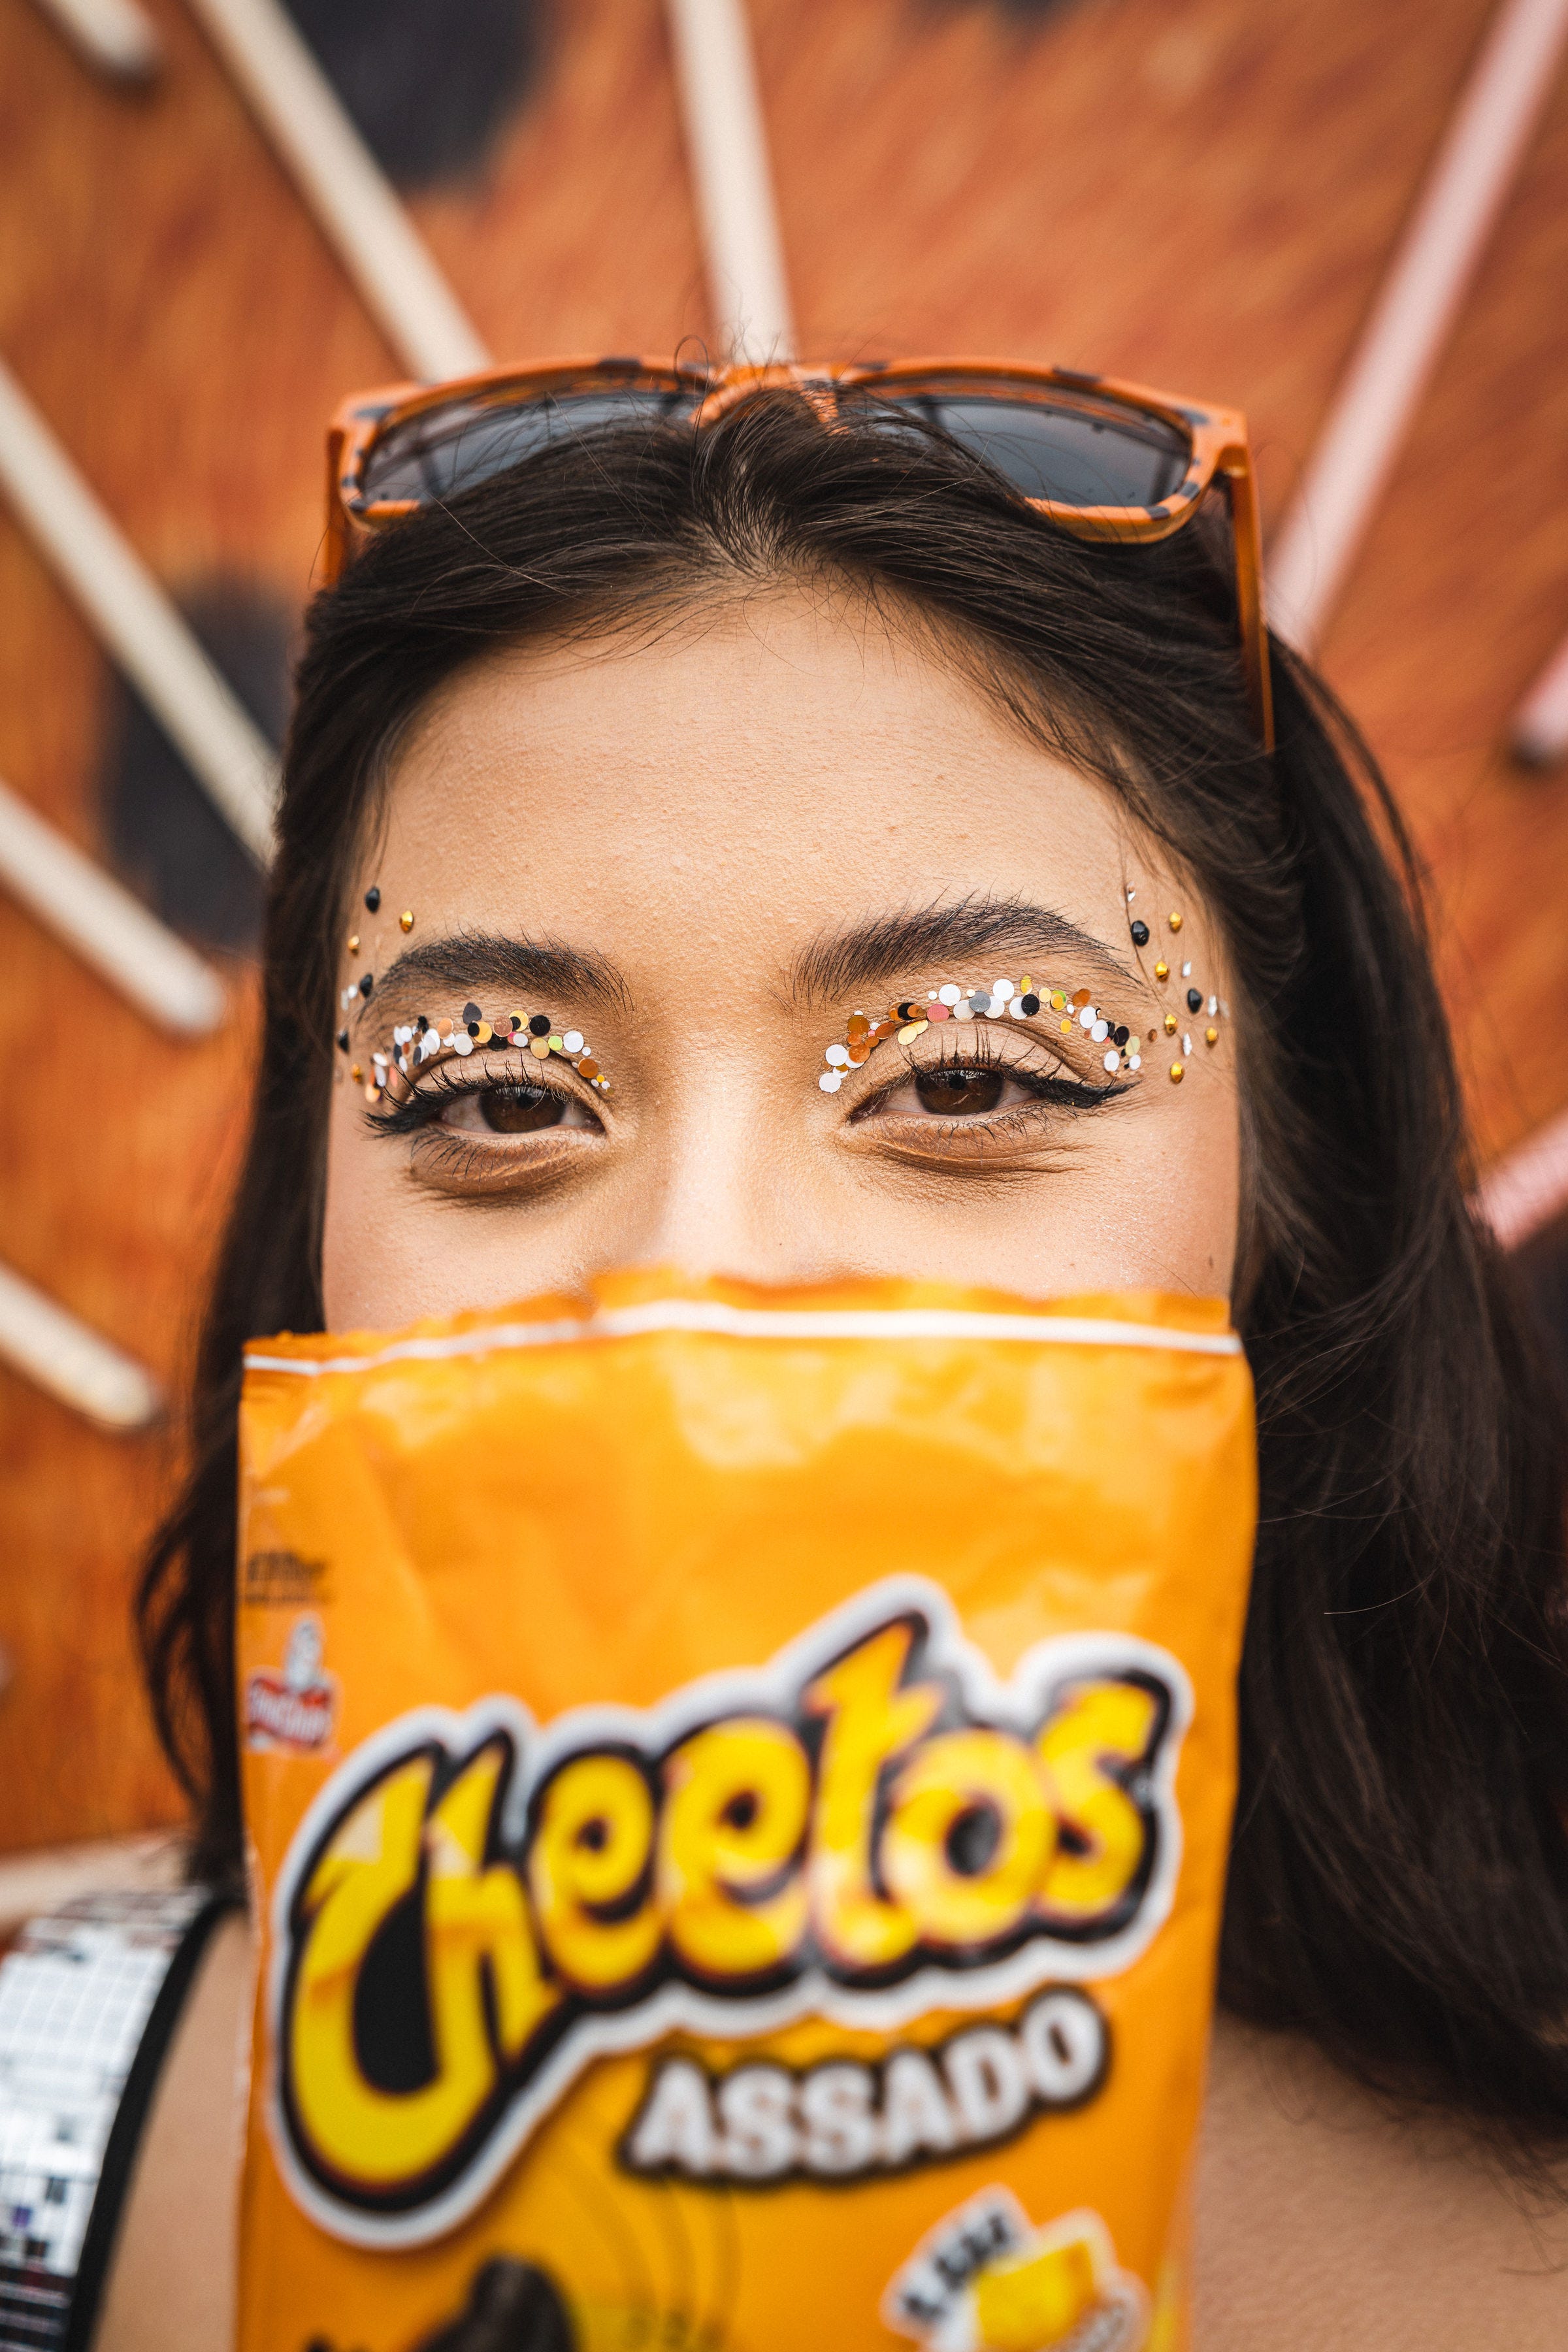 Cheetos no Carnaval com Anitta? #IssoÉMuitoCheetos